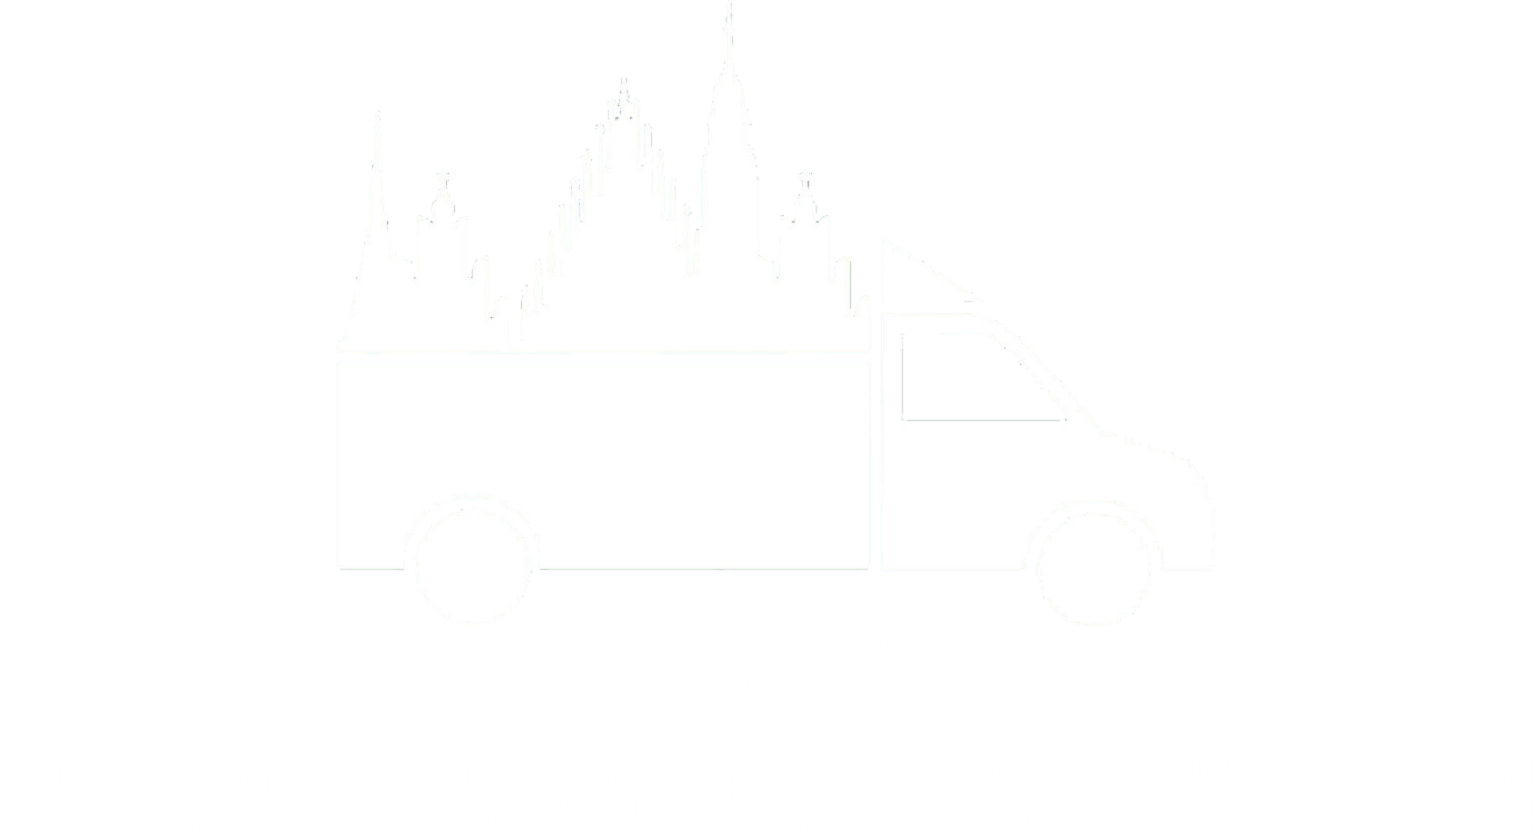 Transport i przeprowadzki we Wrocławiu, firma przeprowadzkowa MKL